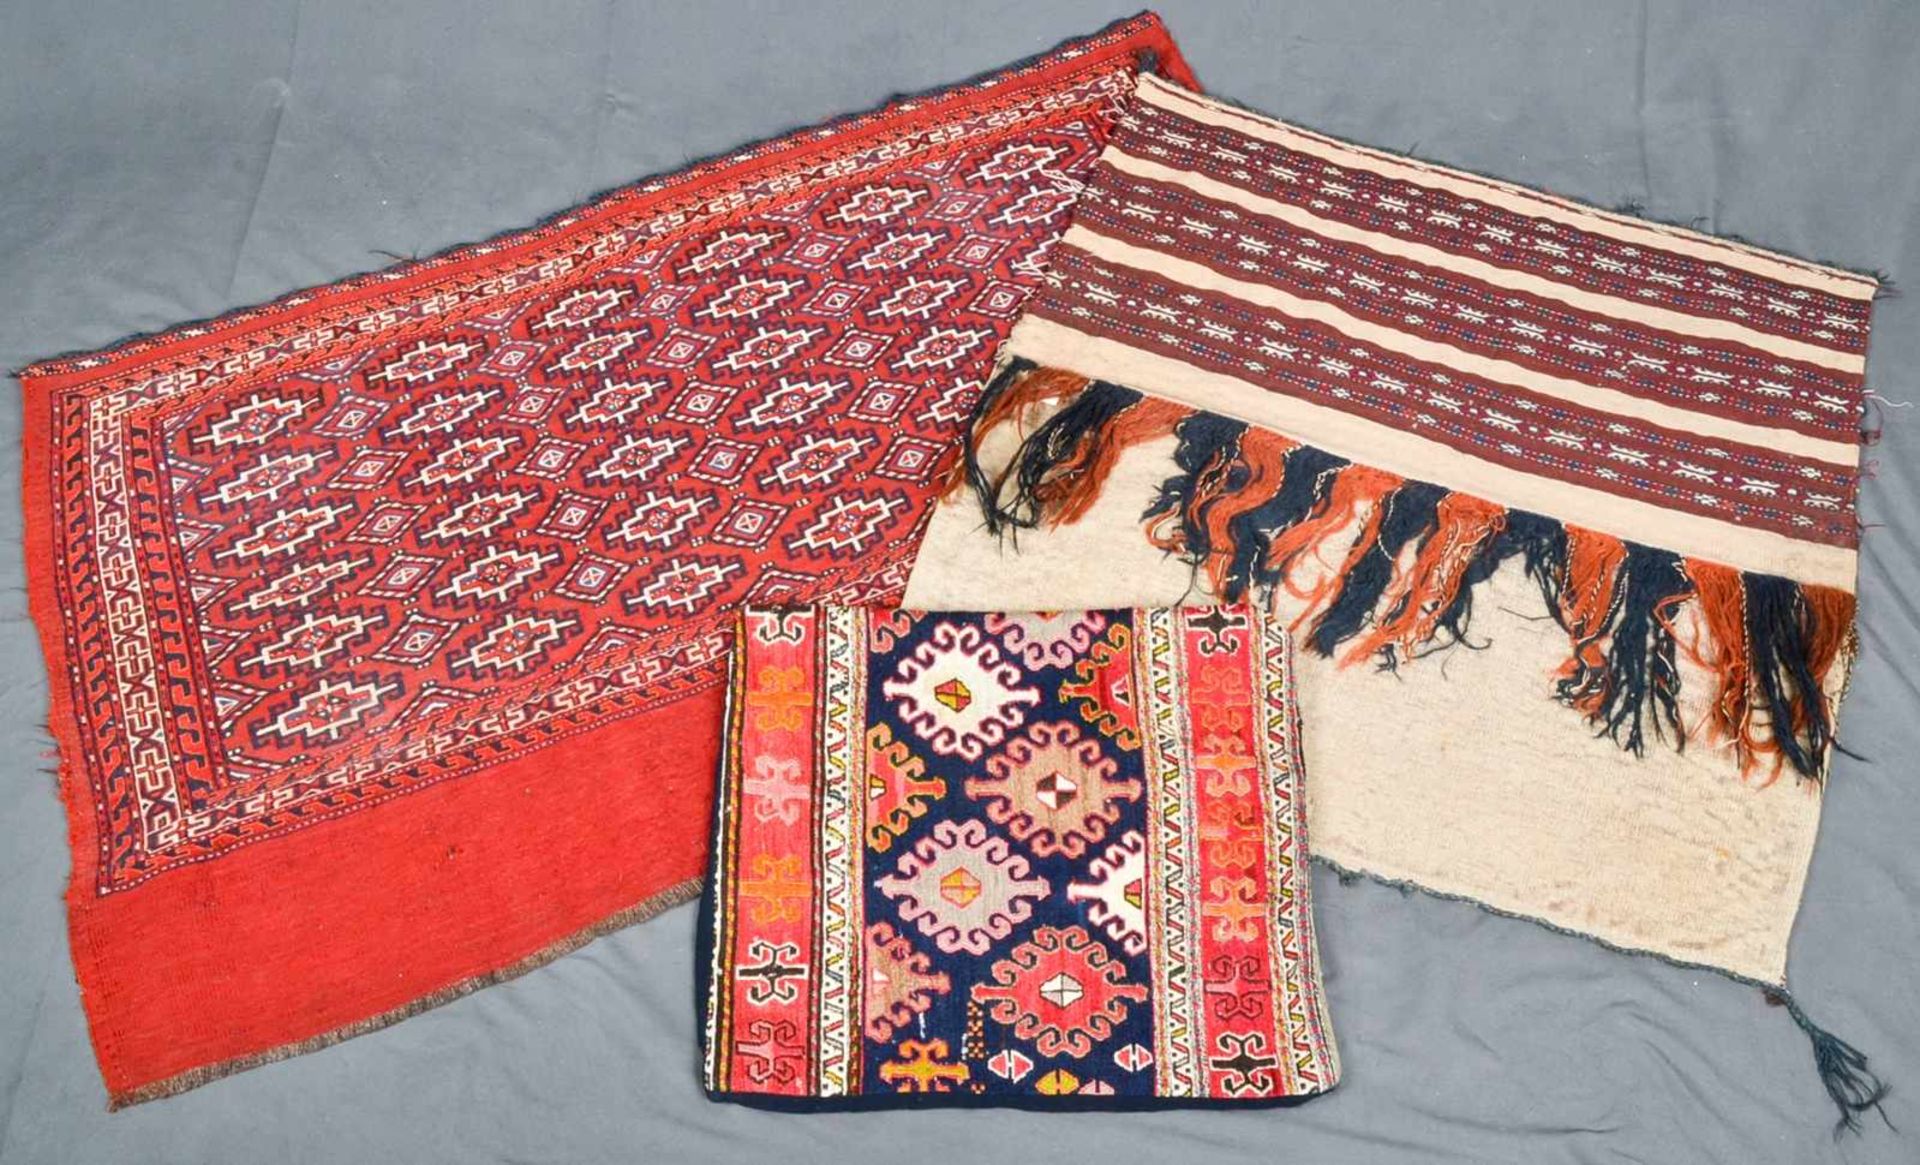 3teiliges Konvolut "alte und antike" Teppiche, bestehend aus drei versch. Kelim bzw. Flachgewebe-